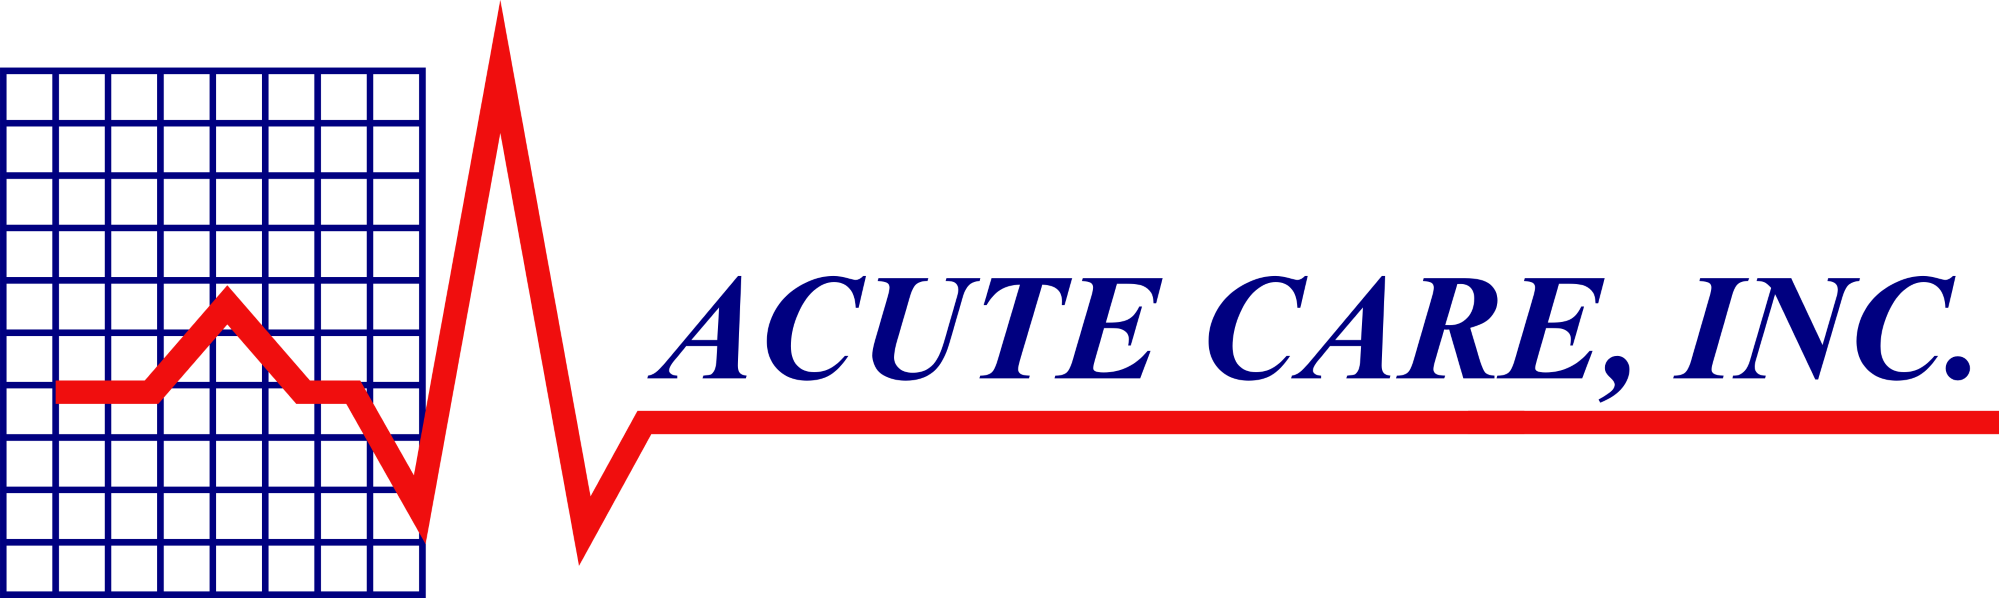 Acute Care Inc